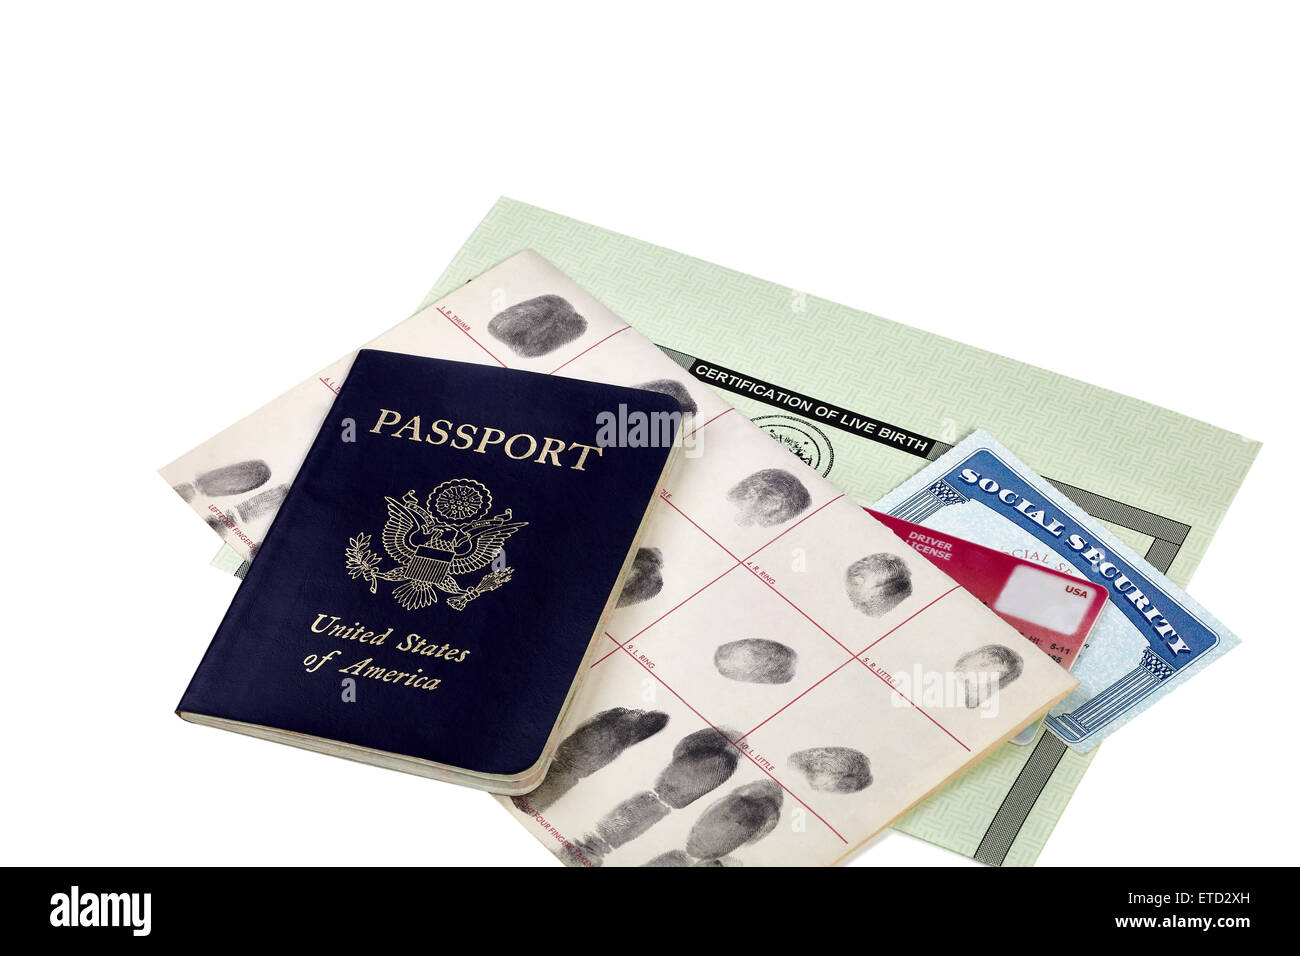 Passeport, carte d'empreintes digitales, permis de conduire, carte de sécurité sociale et le certificat de naissance isolated on white Banque D'Images